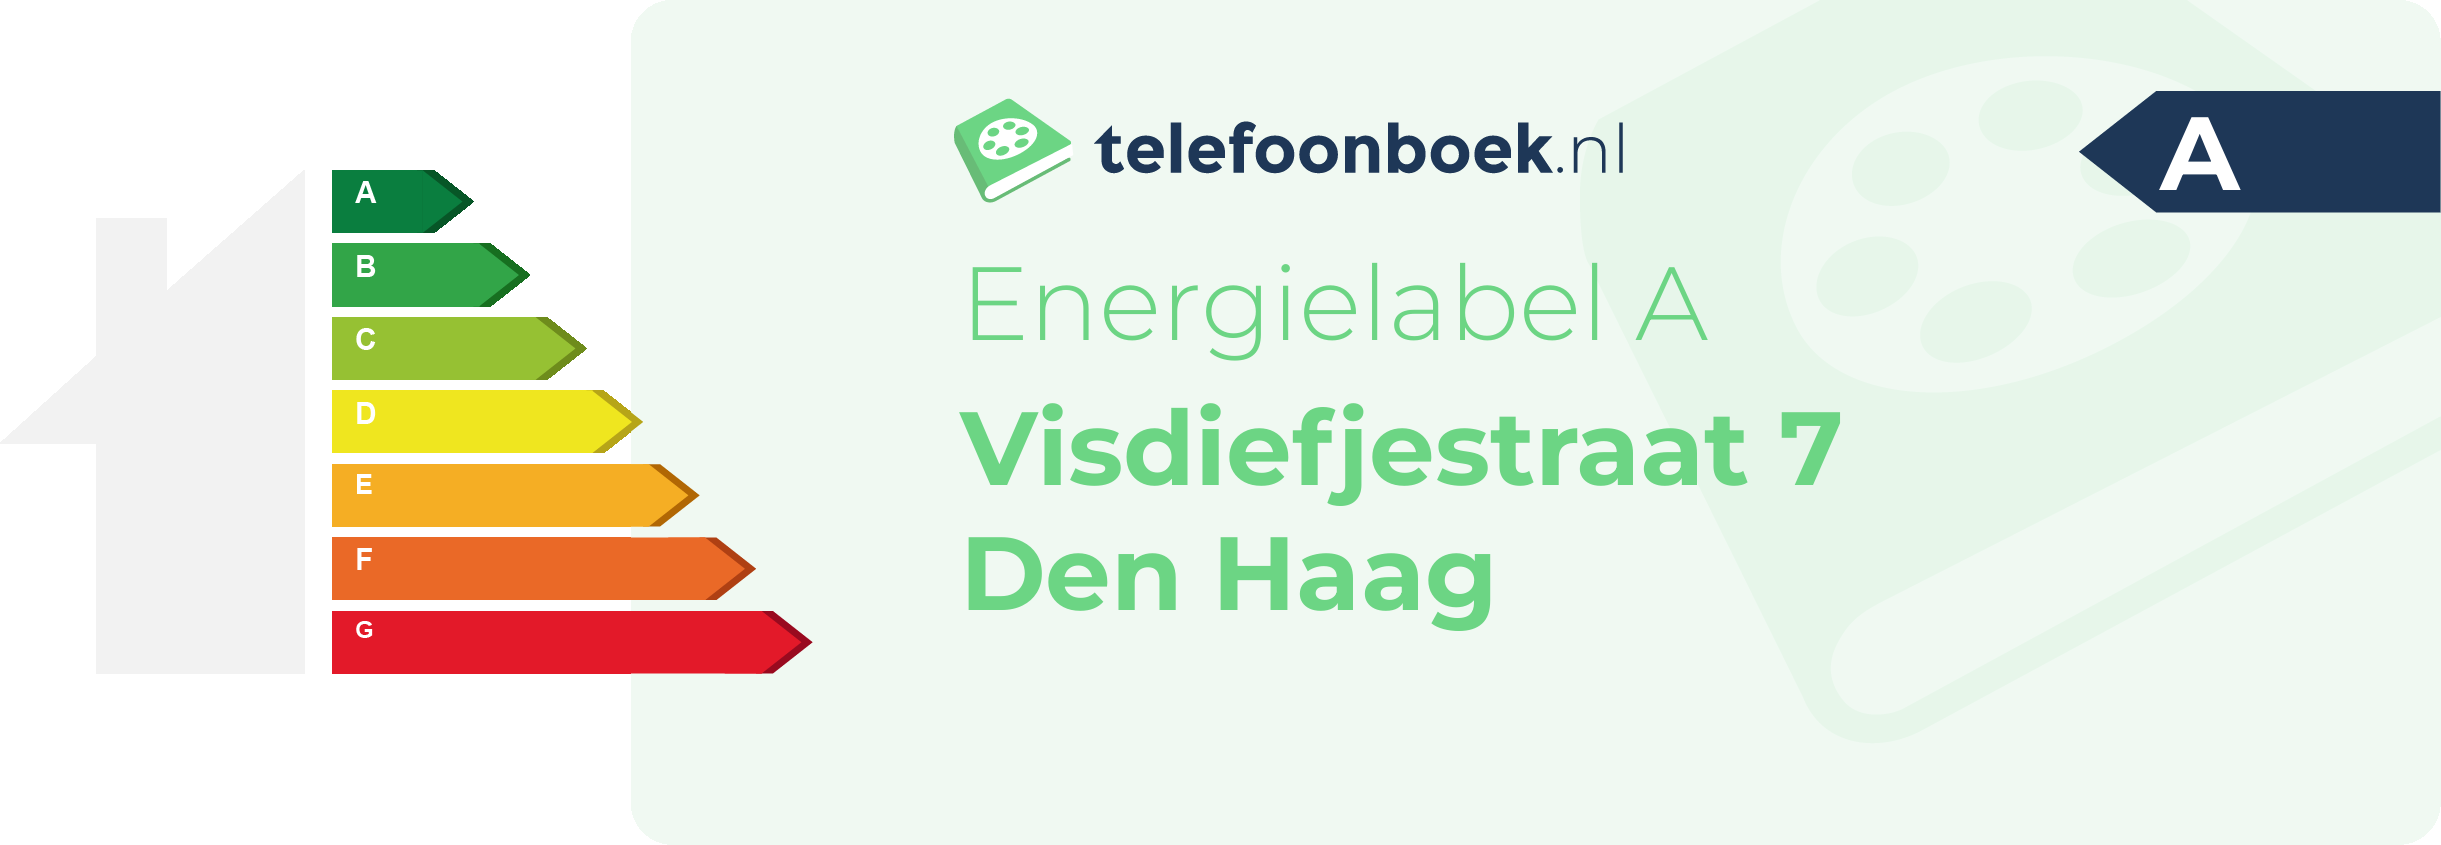 Energielabel Visdiefjestraat 7 Den Haag